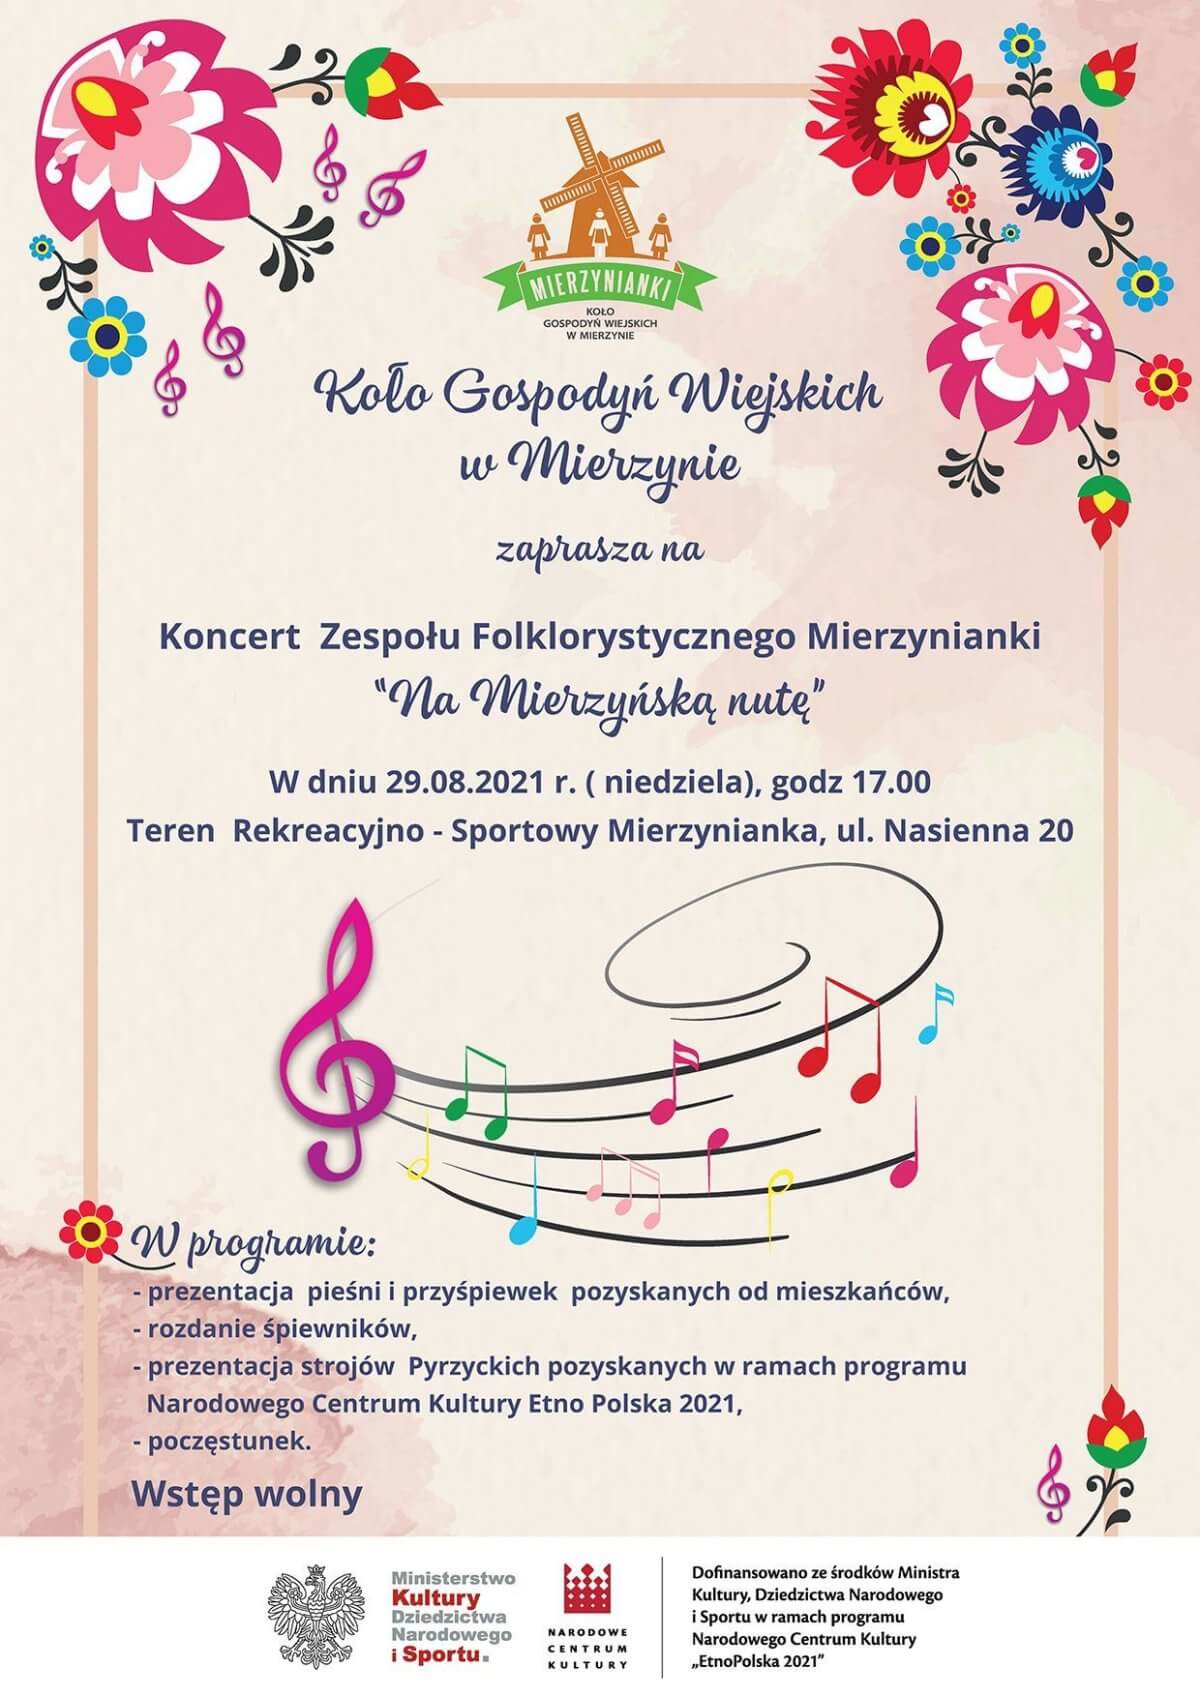 Plakat informacyjny koncertu Zespołu Folklorystycznego Mierzynianki pt. Na Mierzyńską nutę